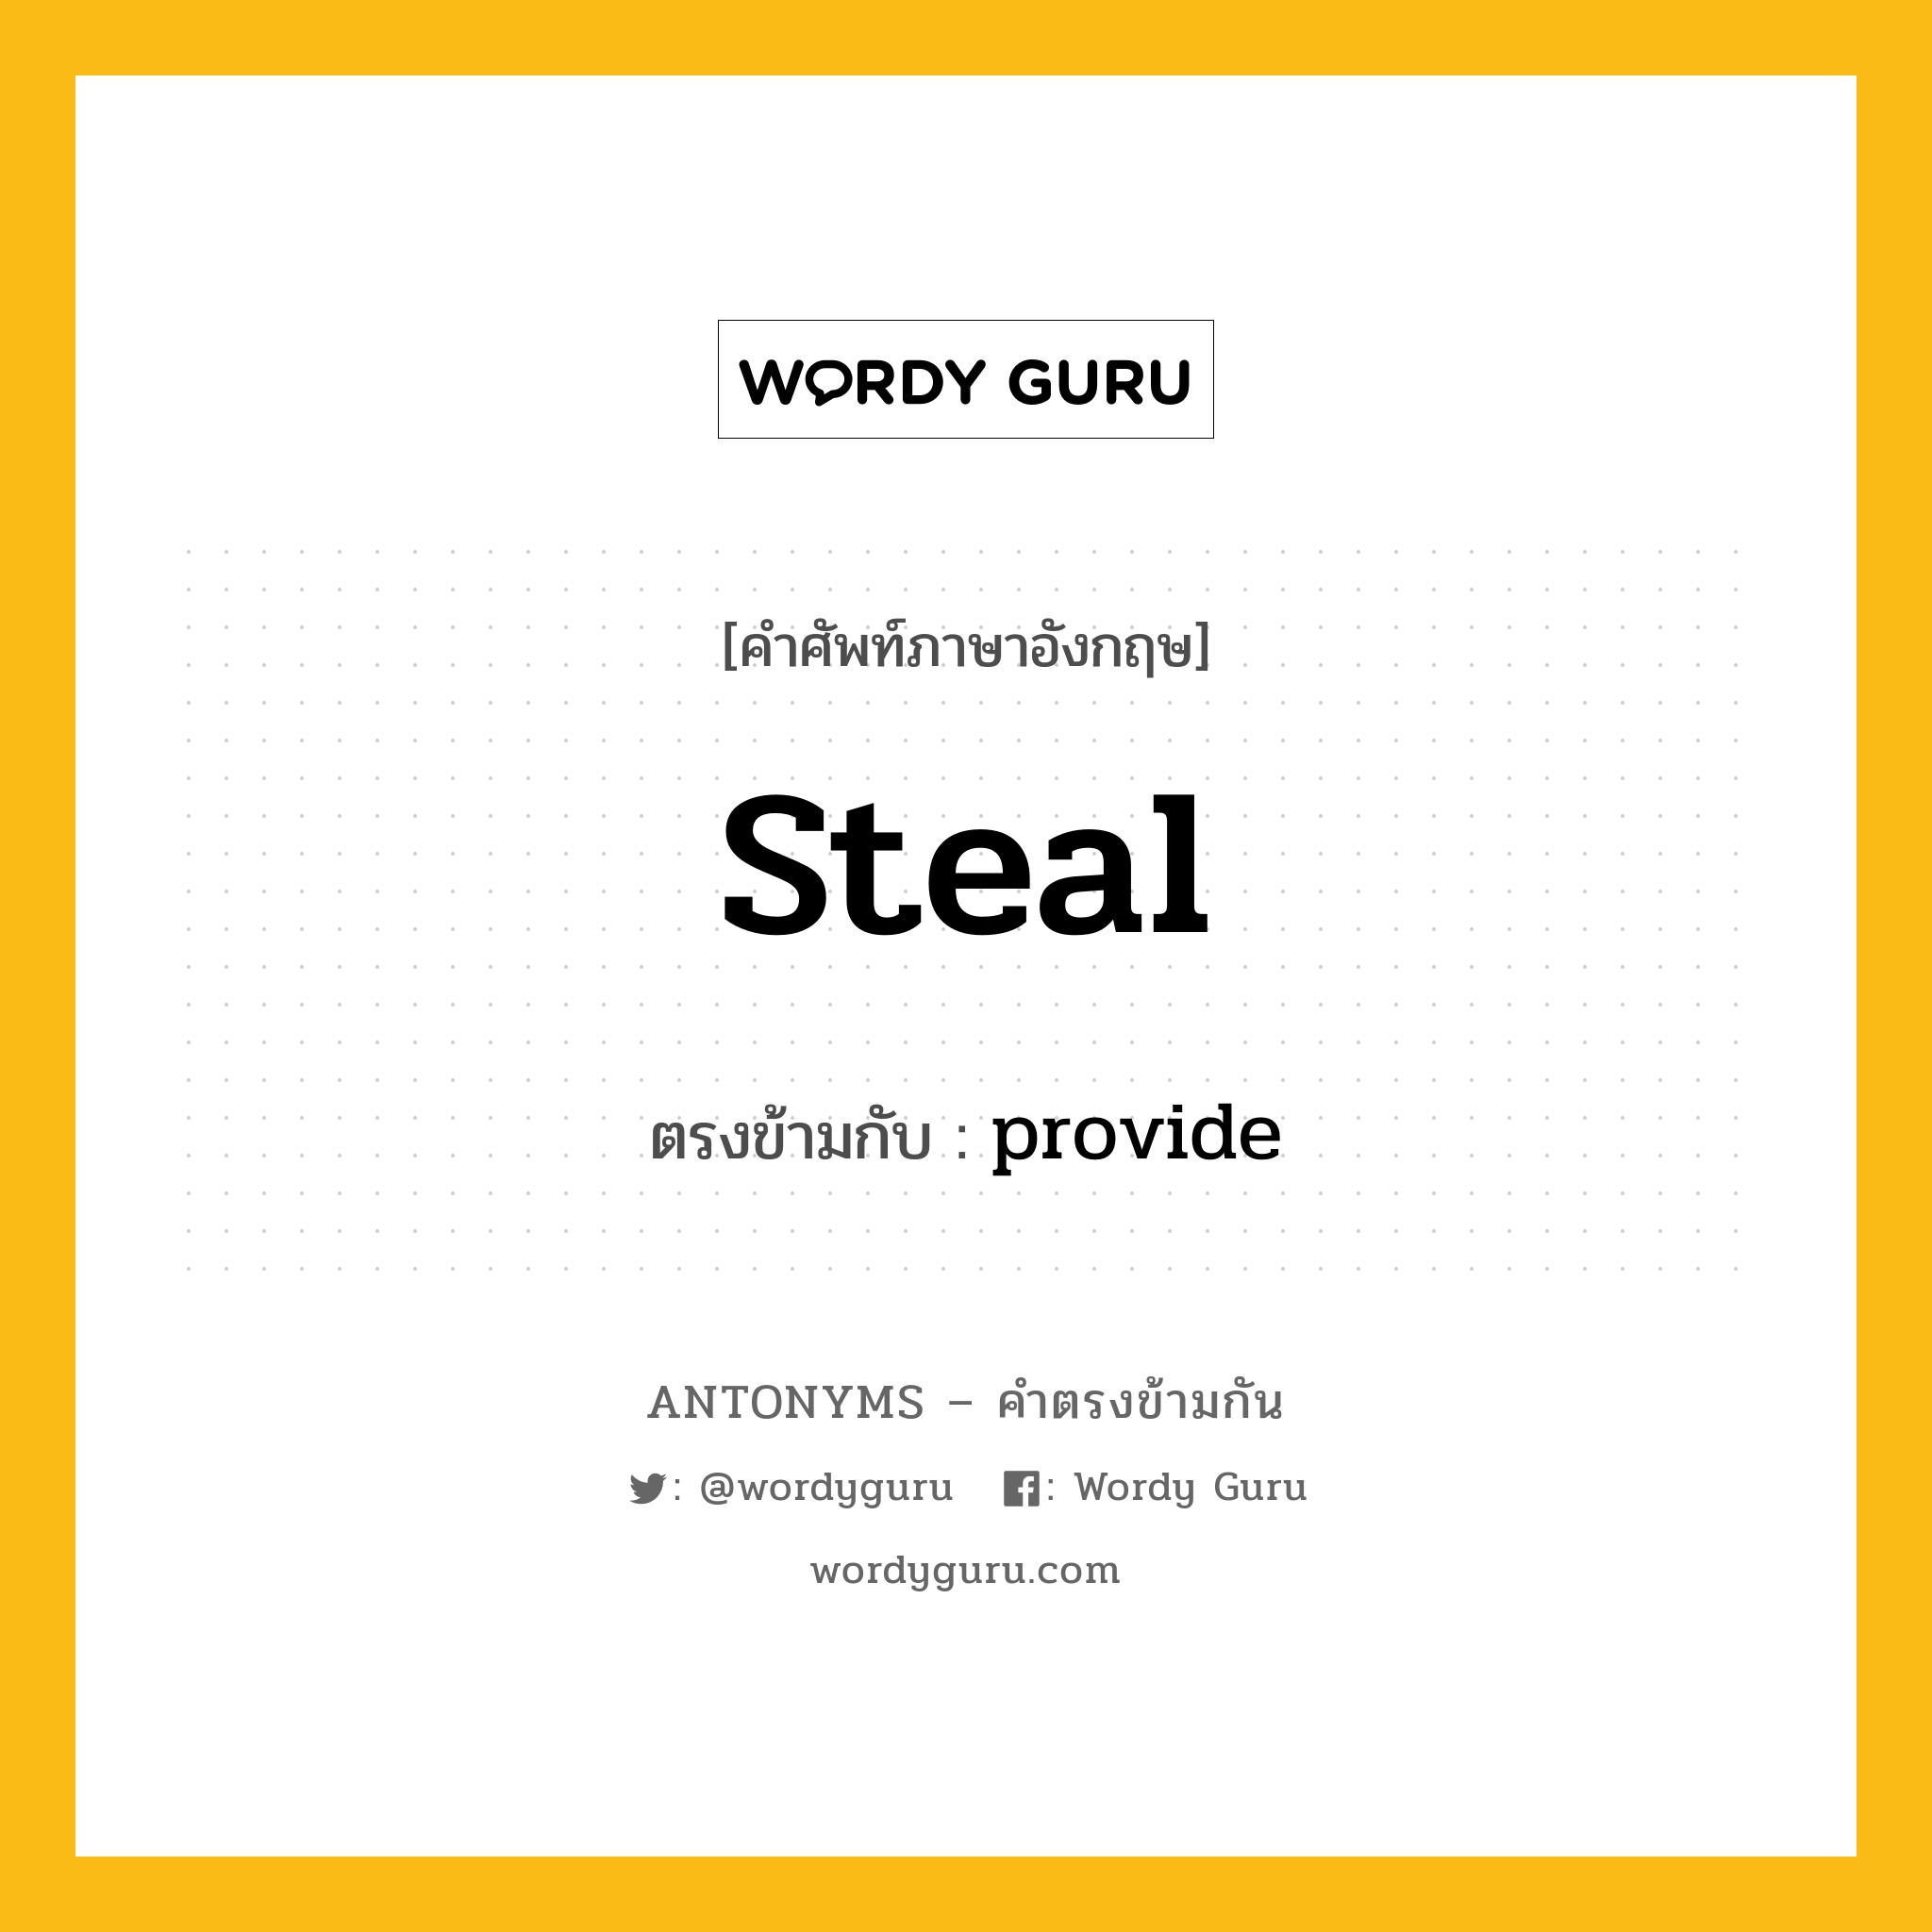 steal เป็นคำตรงข้ามกับคำไหนบ้าง?, คำศัพท์ภาษาอังกฤษ steal ตรงข้ามกับ provide หมวด provide